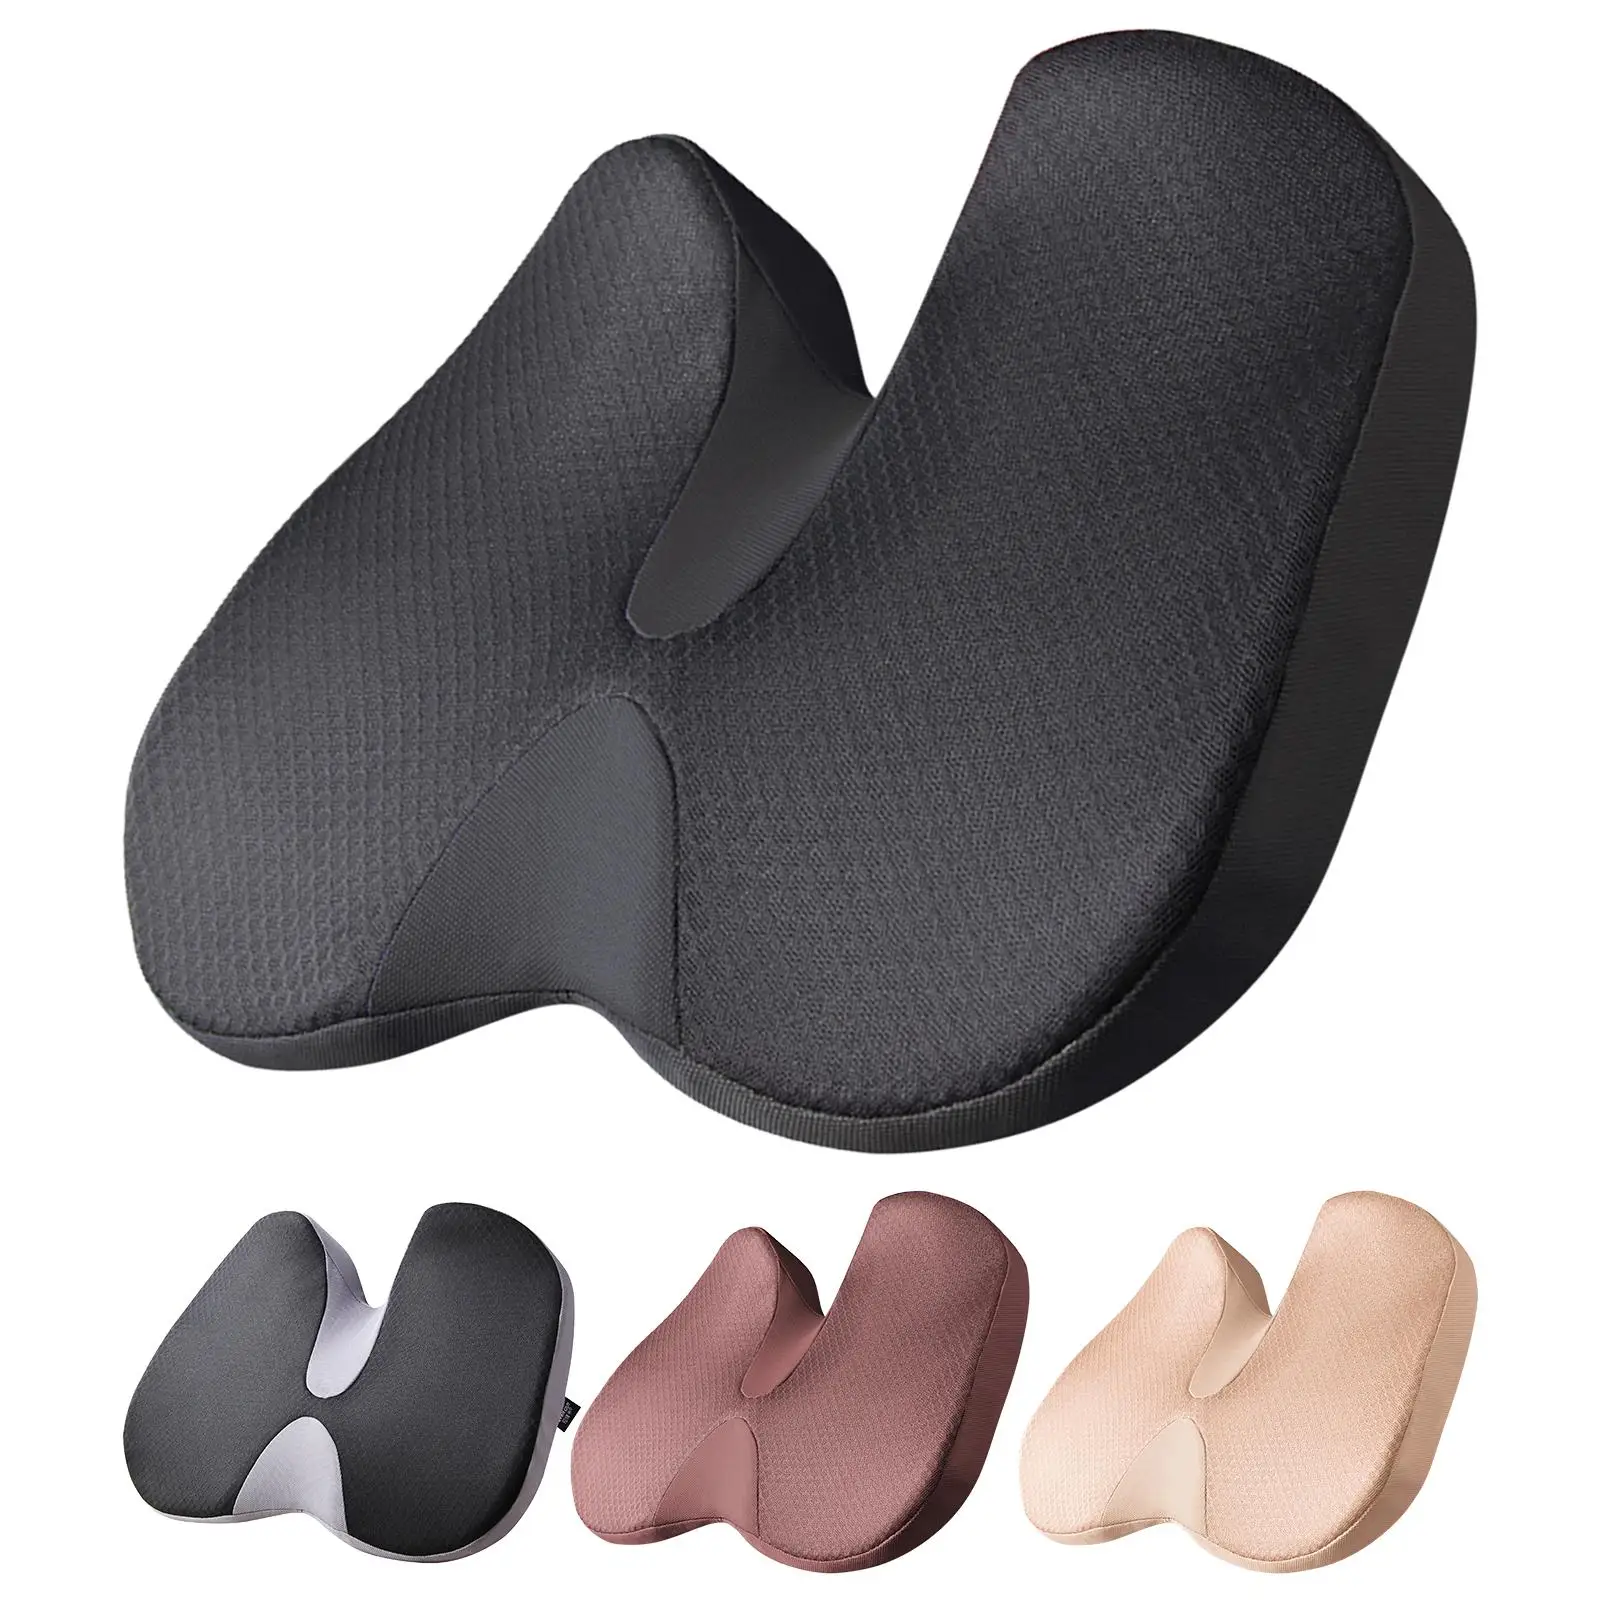 Breathable Office Chair Seat Cushion Non Slip Car Seat Cushion Memory Foam Coccyx Cushion  Comfort for Wheelchair